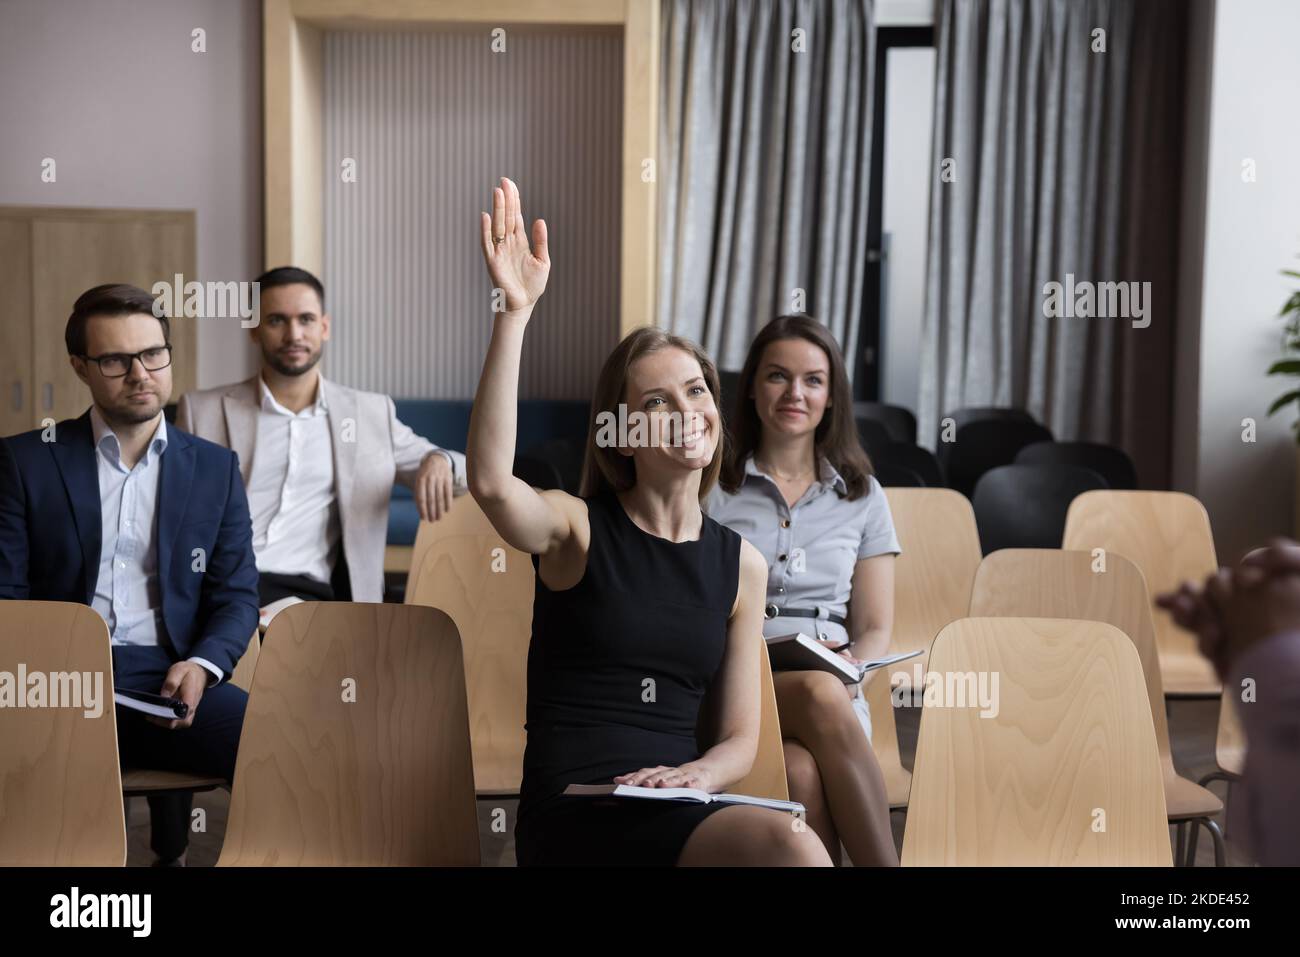 Femme employée, participant à la formation ayant des questions levez le bras pendant l'atelier Banque D'Images